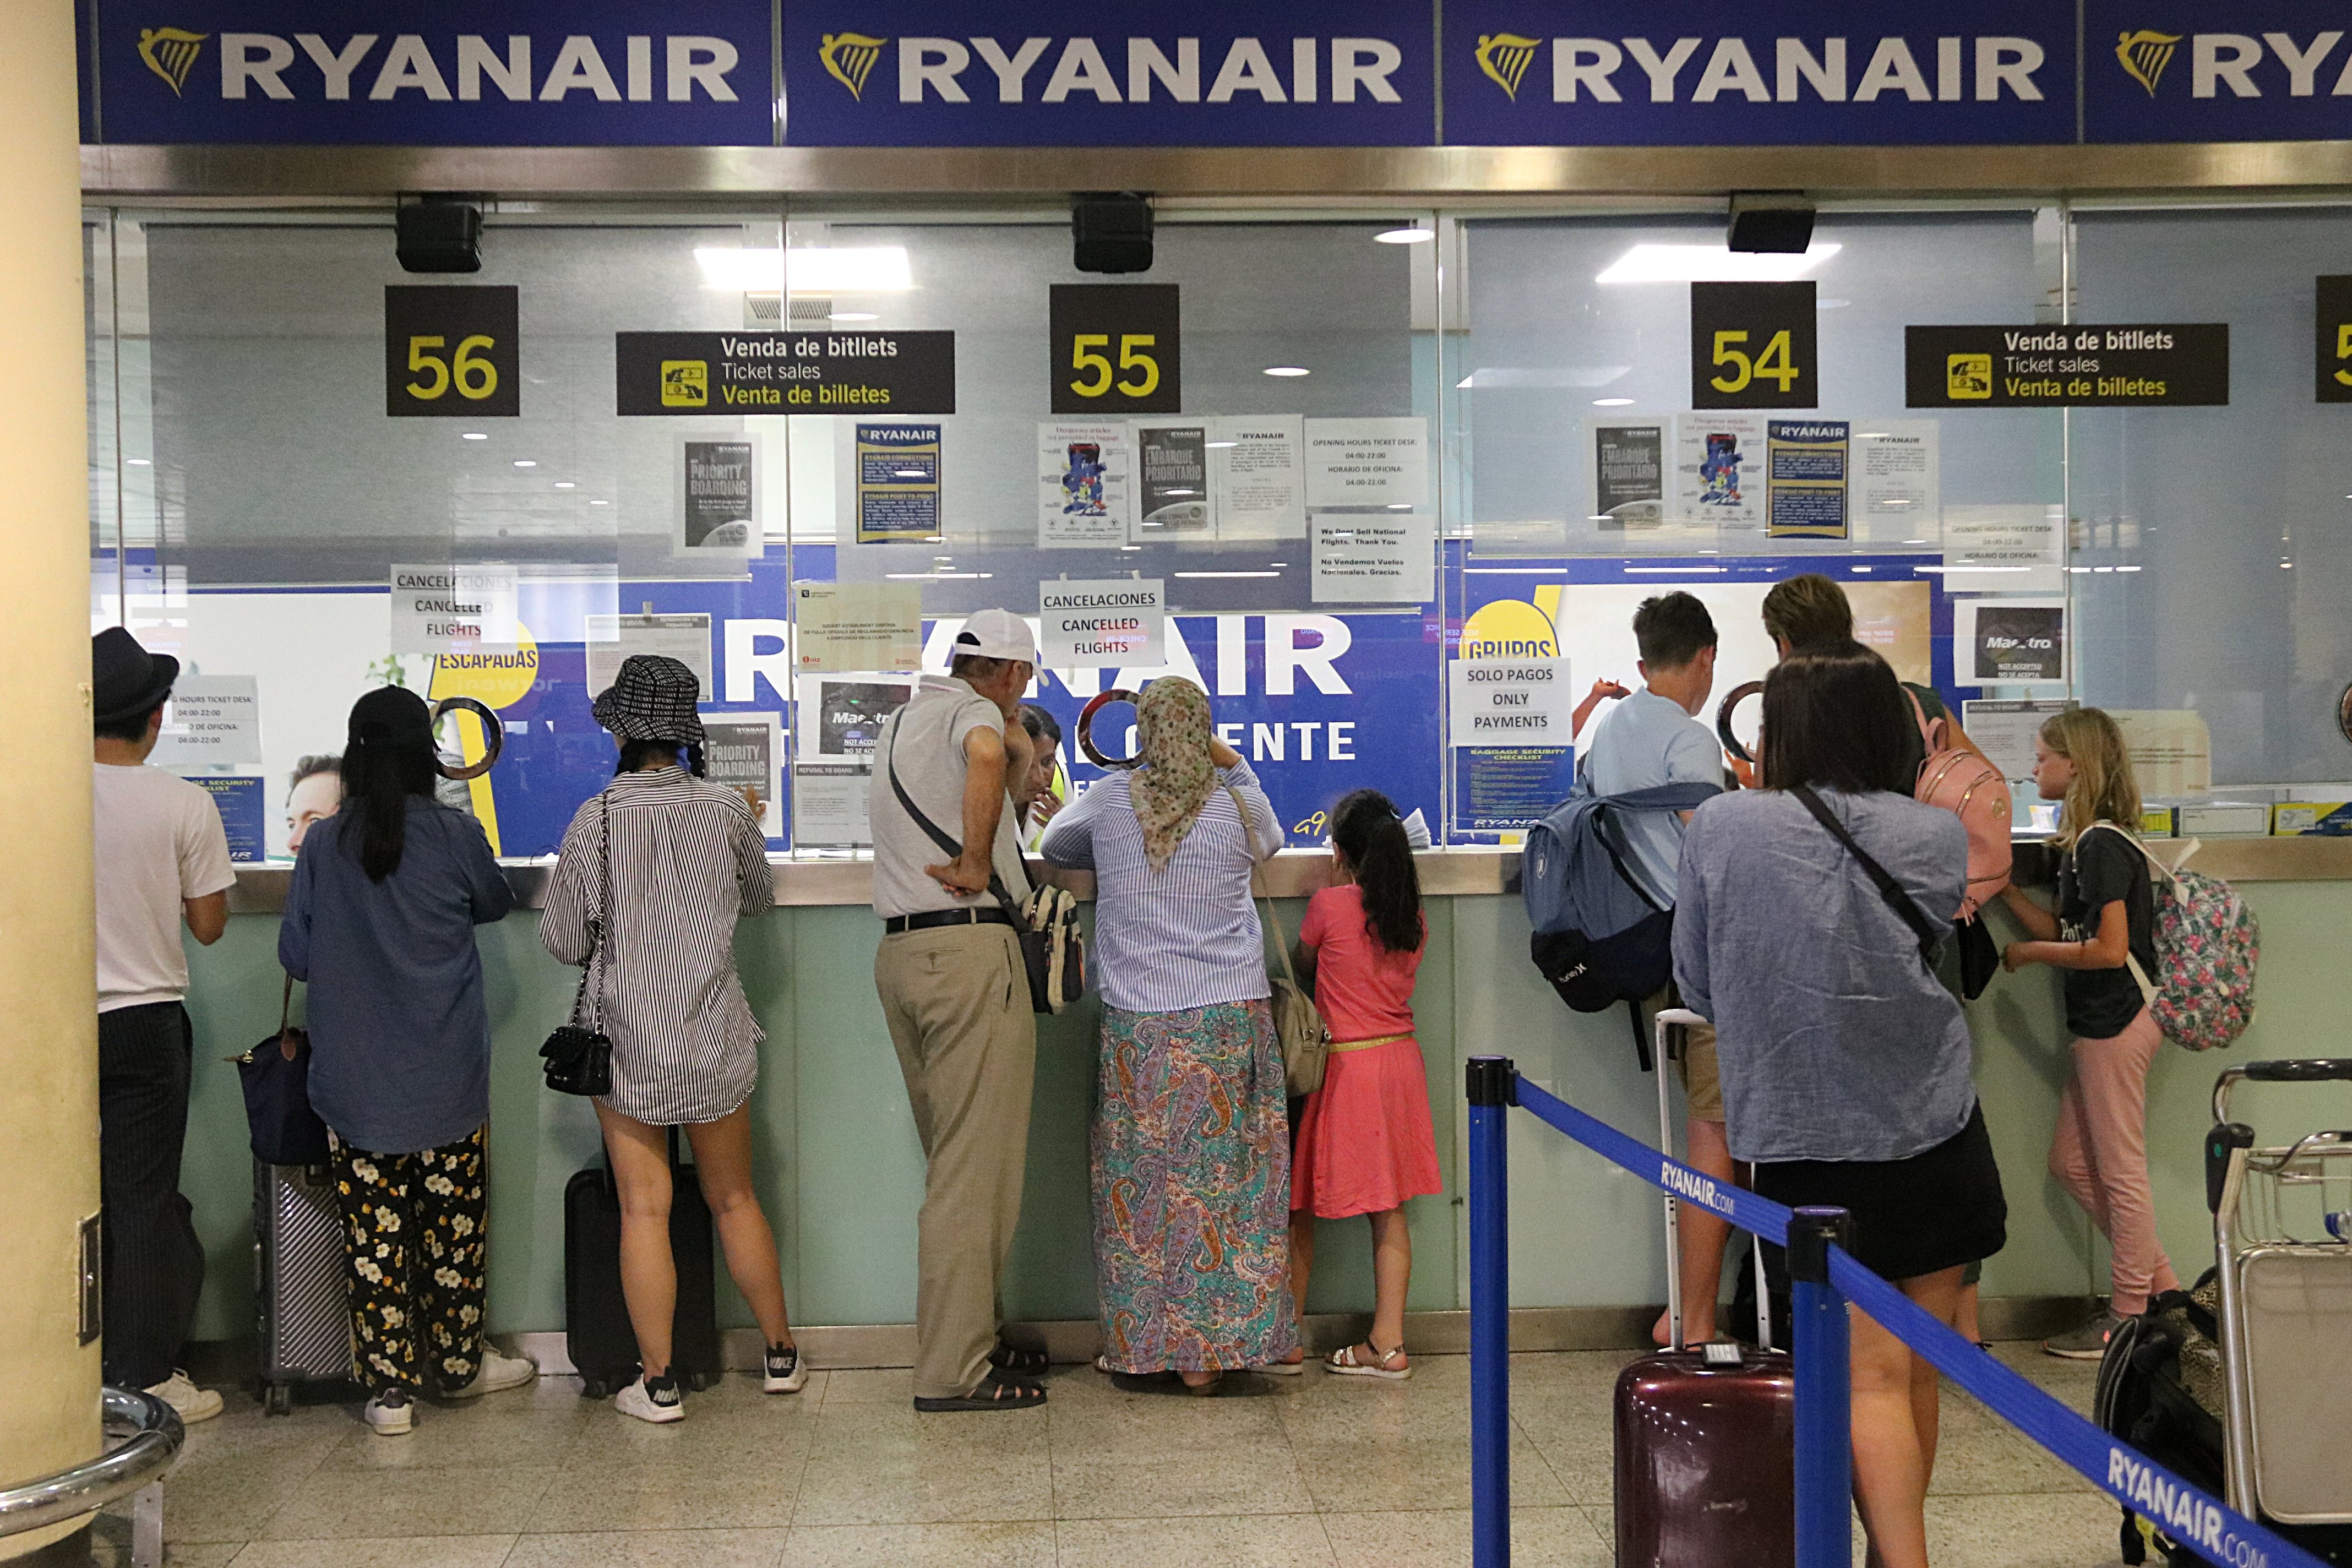 Els pilots de Ryanair faran vaga el 10 d'agost a Bèlgica i Suècia